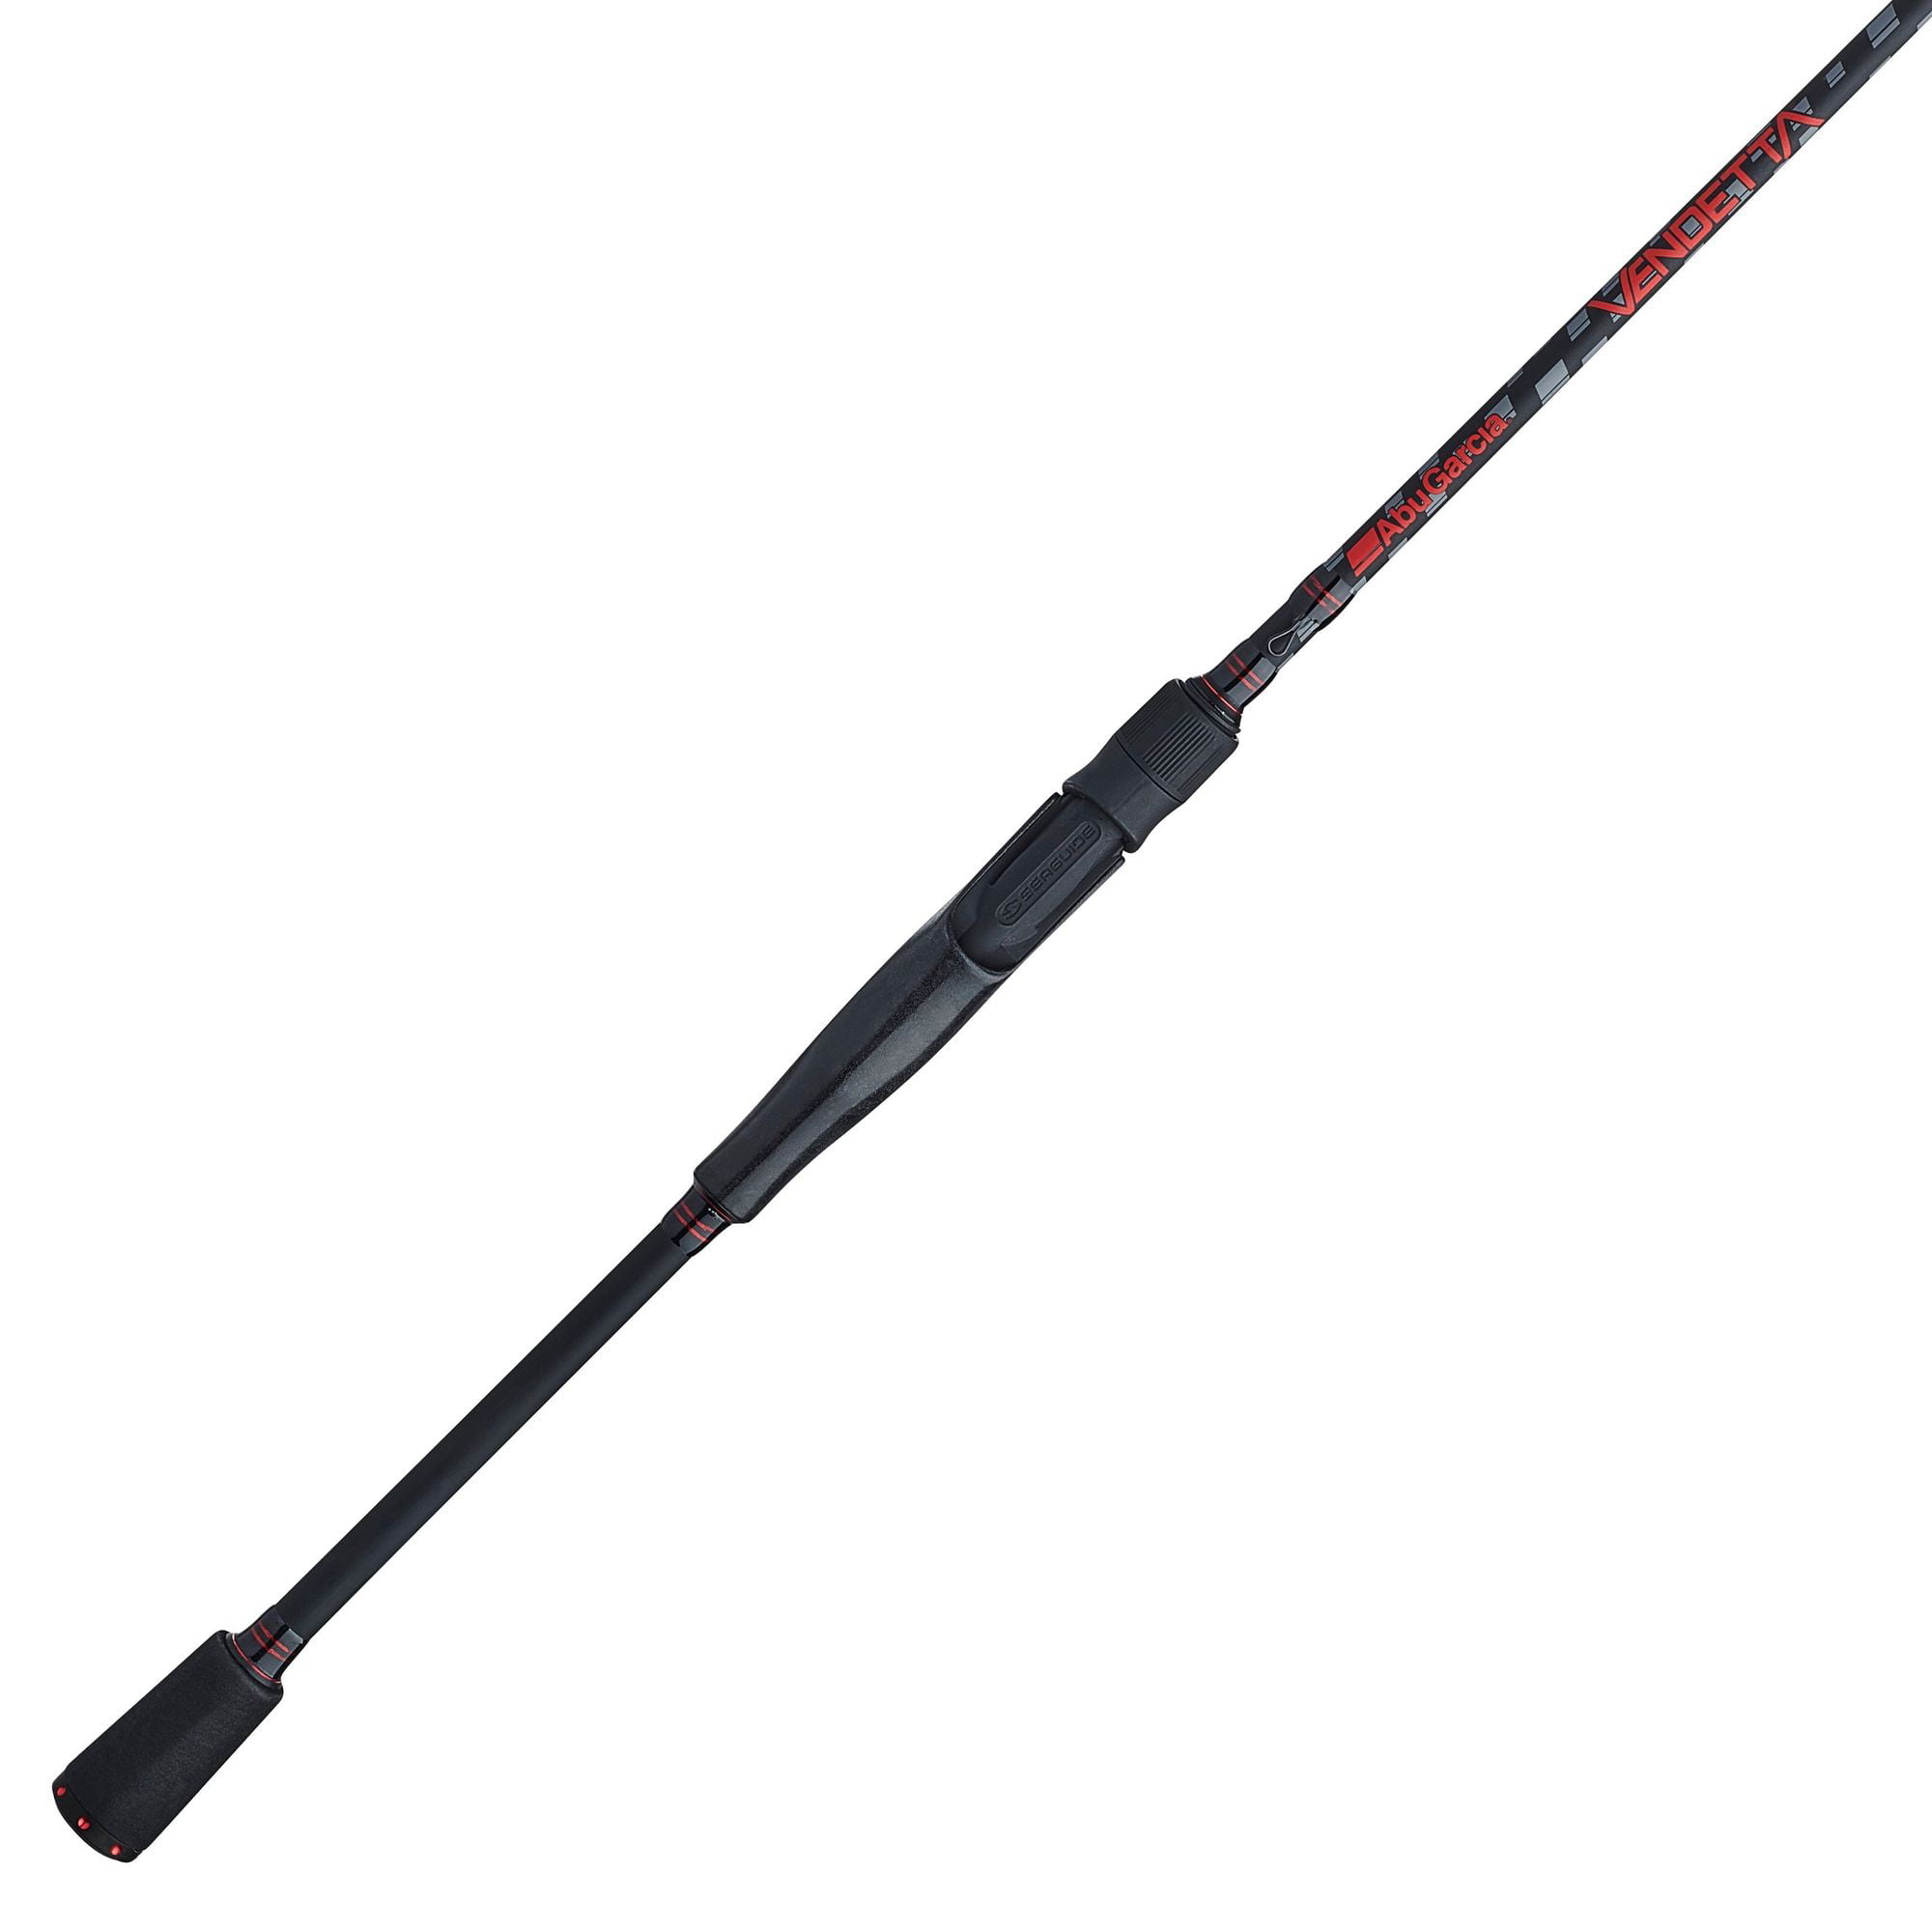 Abu Garcia 6'9” Vendetta Casting Fishing Rod, 1 Piece Rod